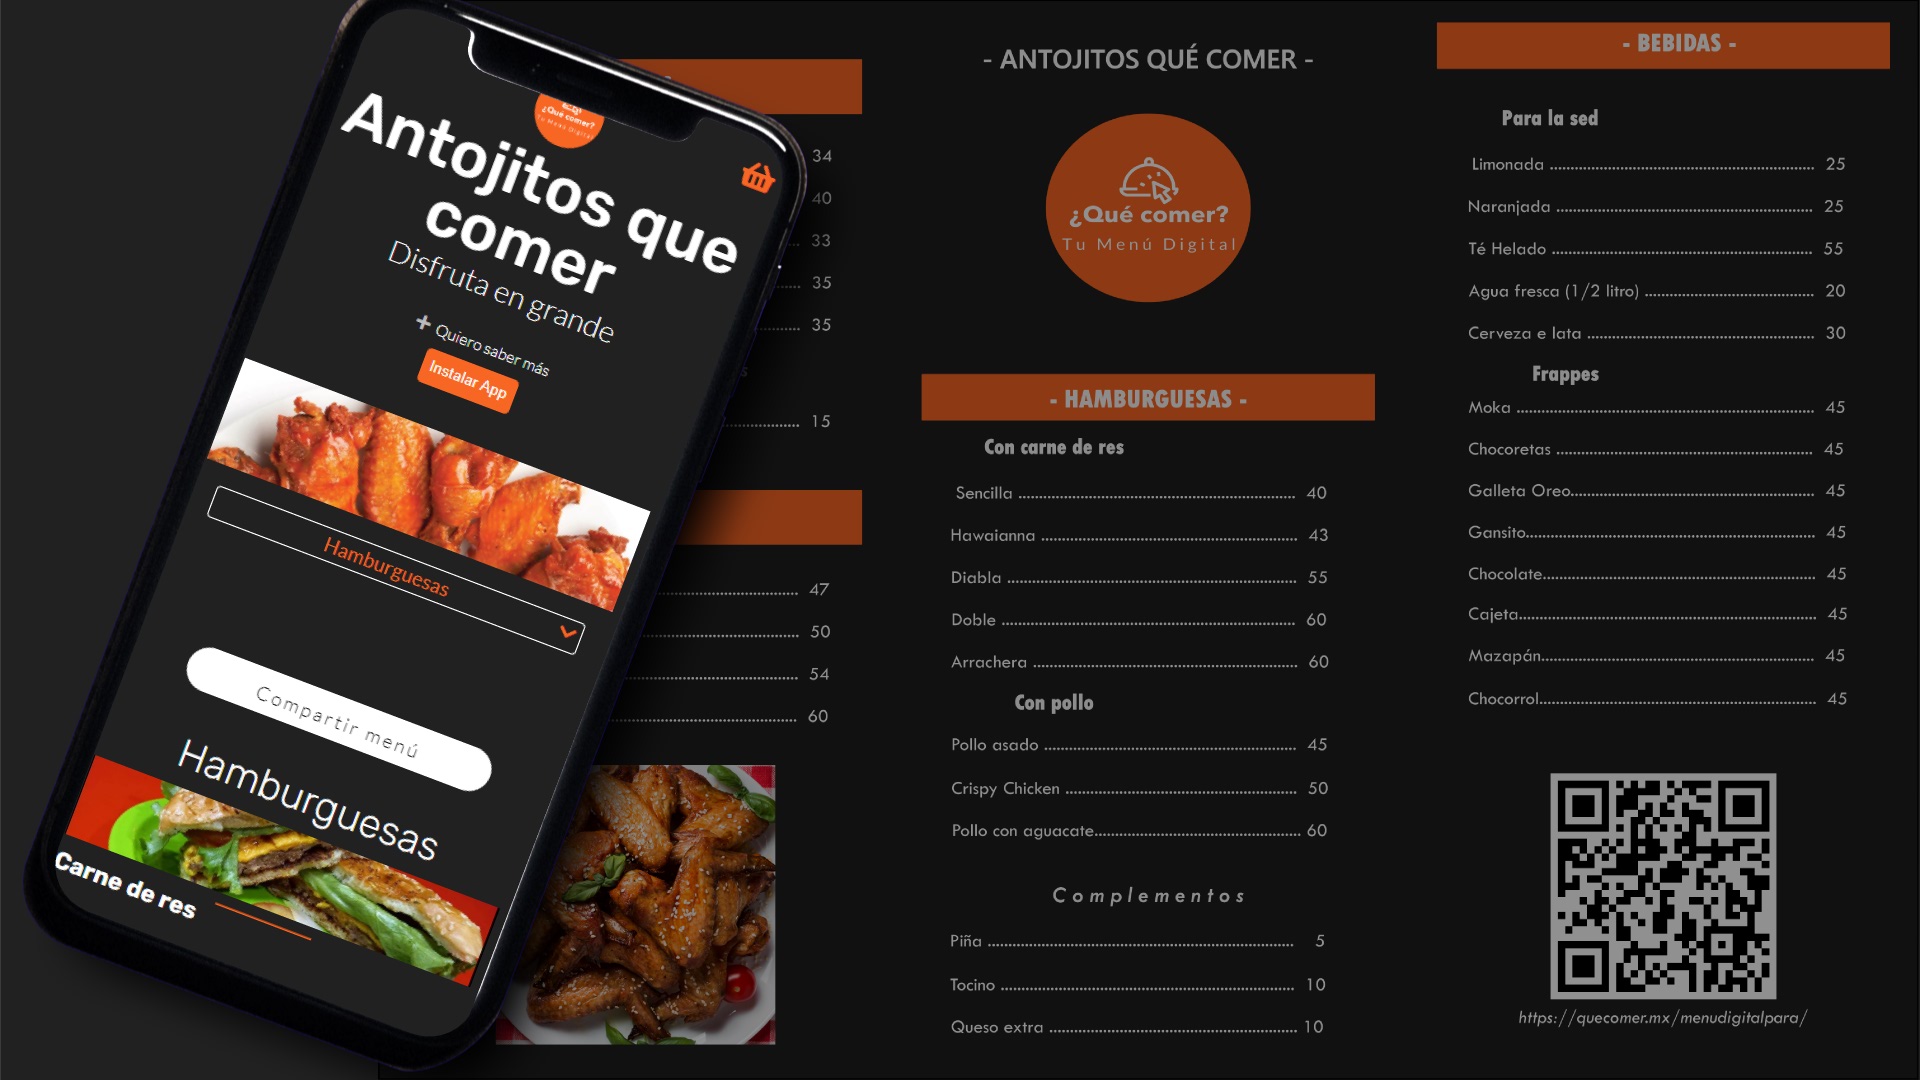 Ejemplo de menú digital, creado en ¿Qué comer? tu Menú Digital y uno físico, ambos con un diseño atractivo expresando la imagen de la empresa.